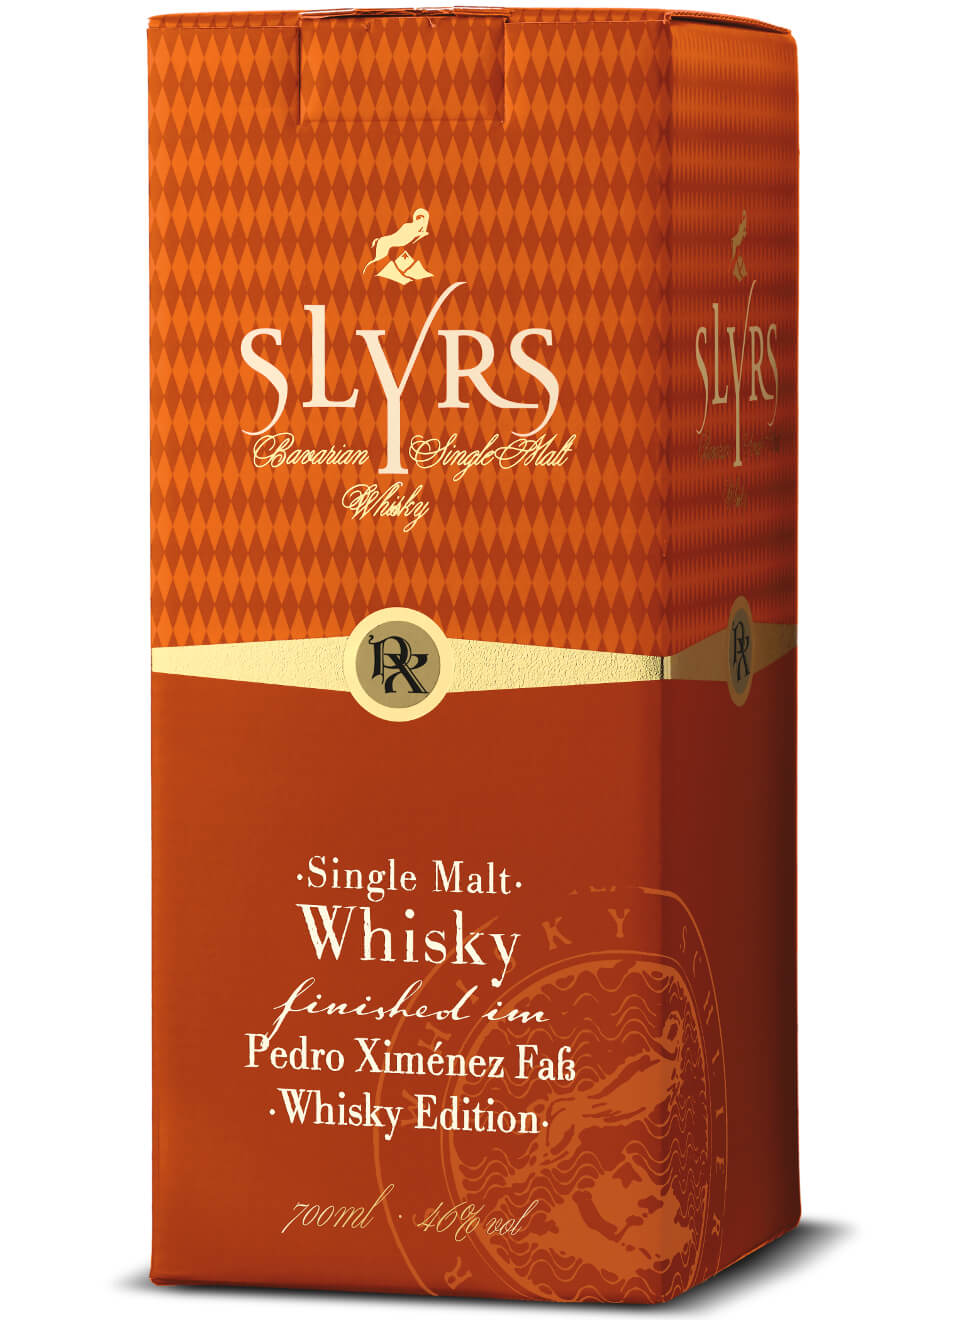 Slyrs Malt Whisky Edition Pedro Ximenez 0,7 L günstig kaufen |  Spirituosenworld.de - Online Shop für Spirituosen und Barzubehör